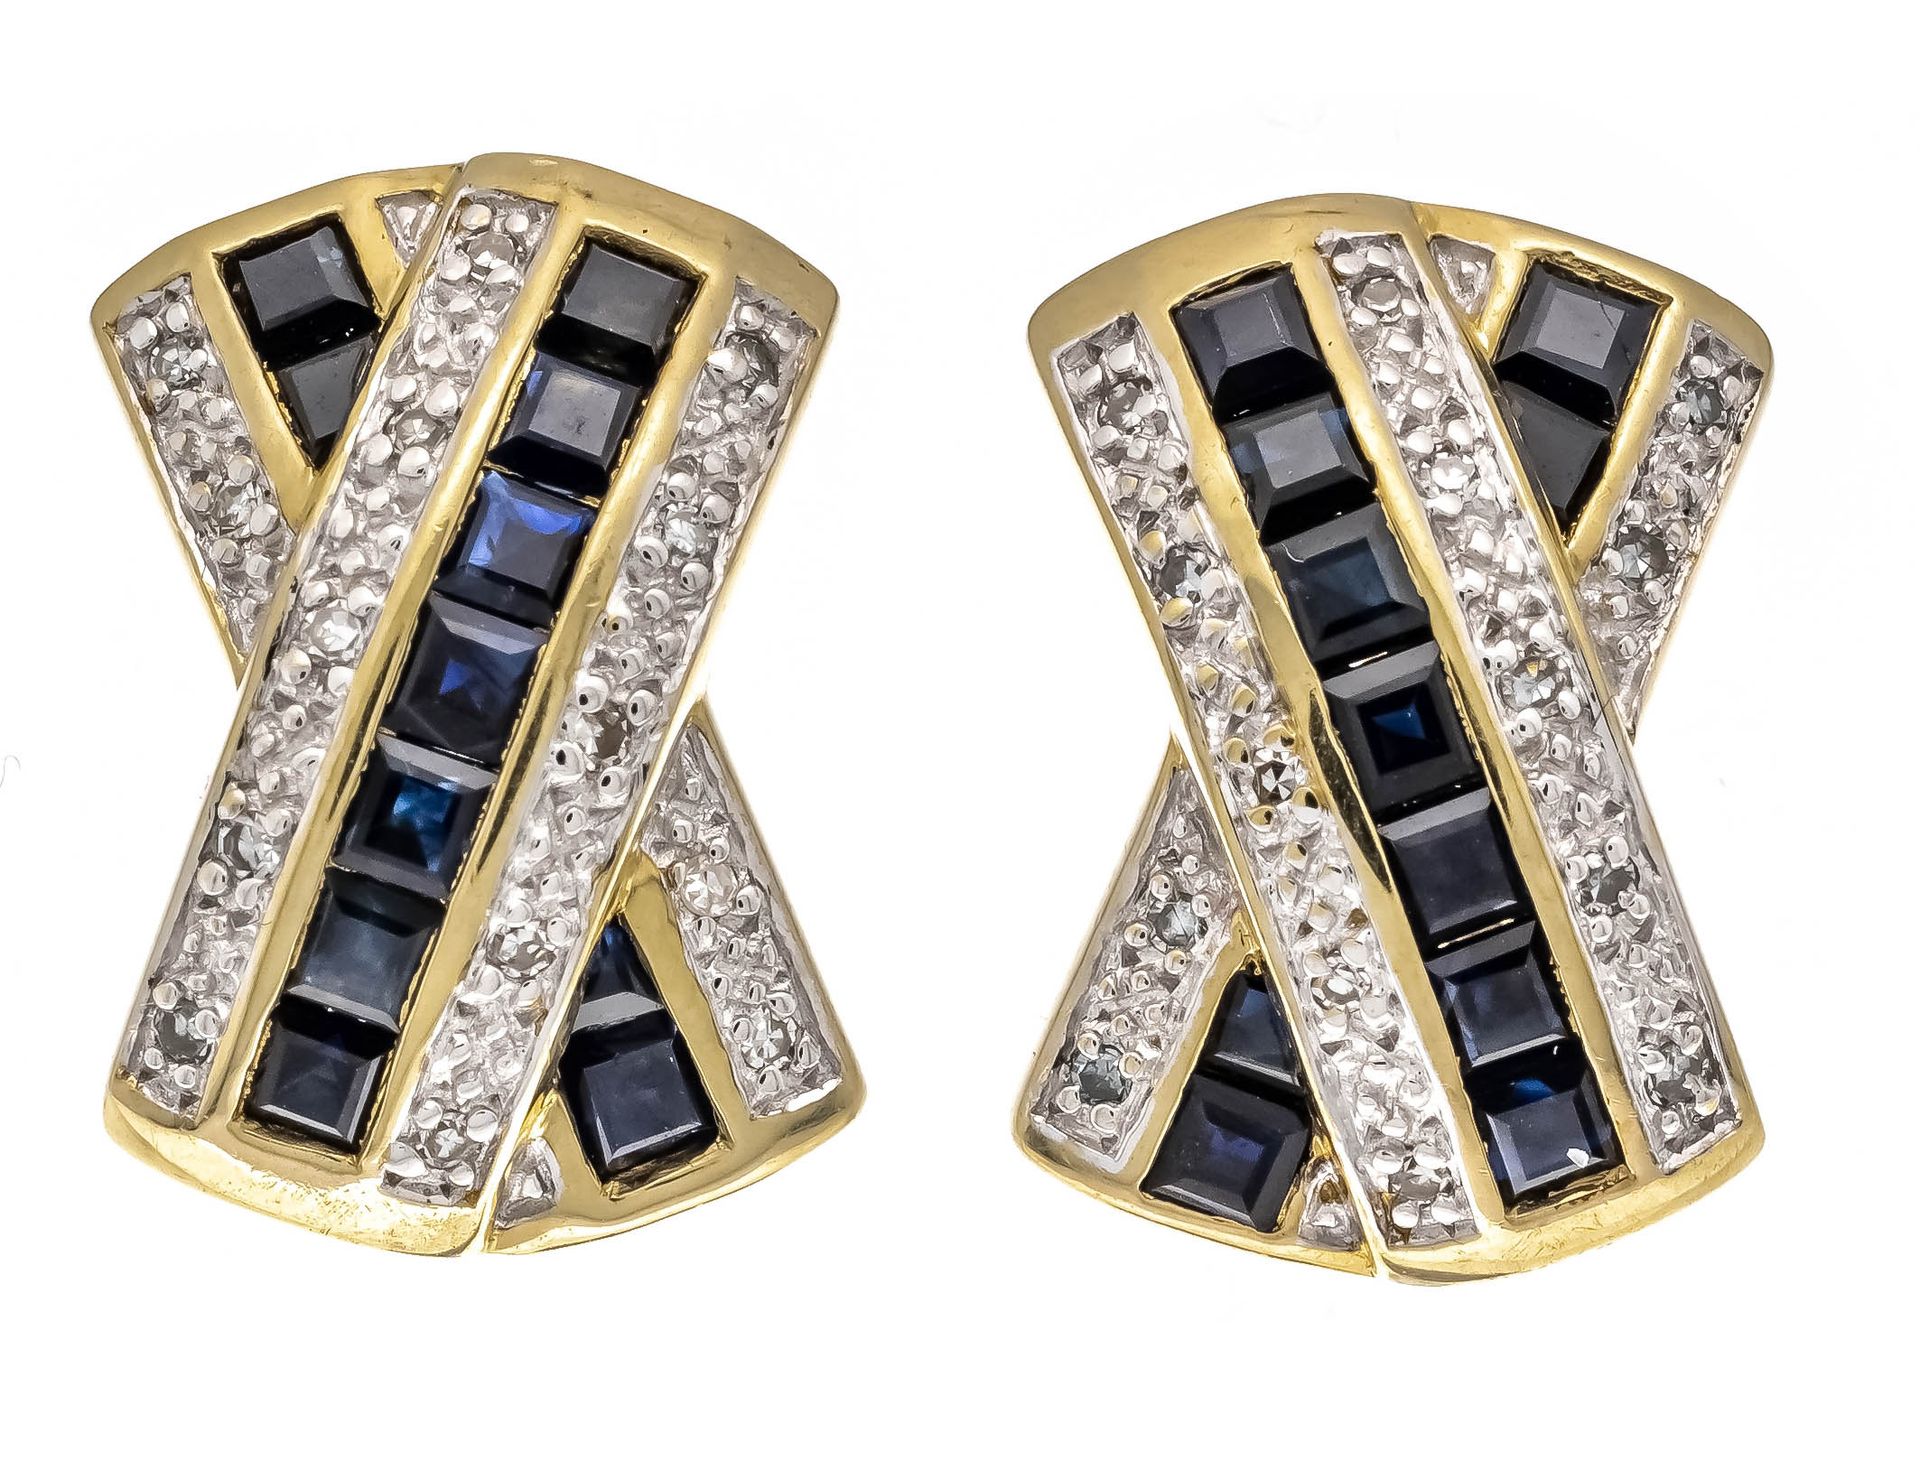 Null GG/WG 585/000黑色钻石耳环，长16毫米，重6.5克，镶有黑色钻石方块和白色钻石。